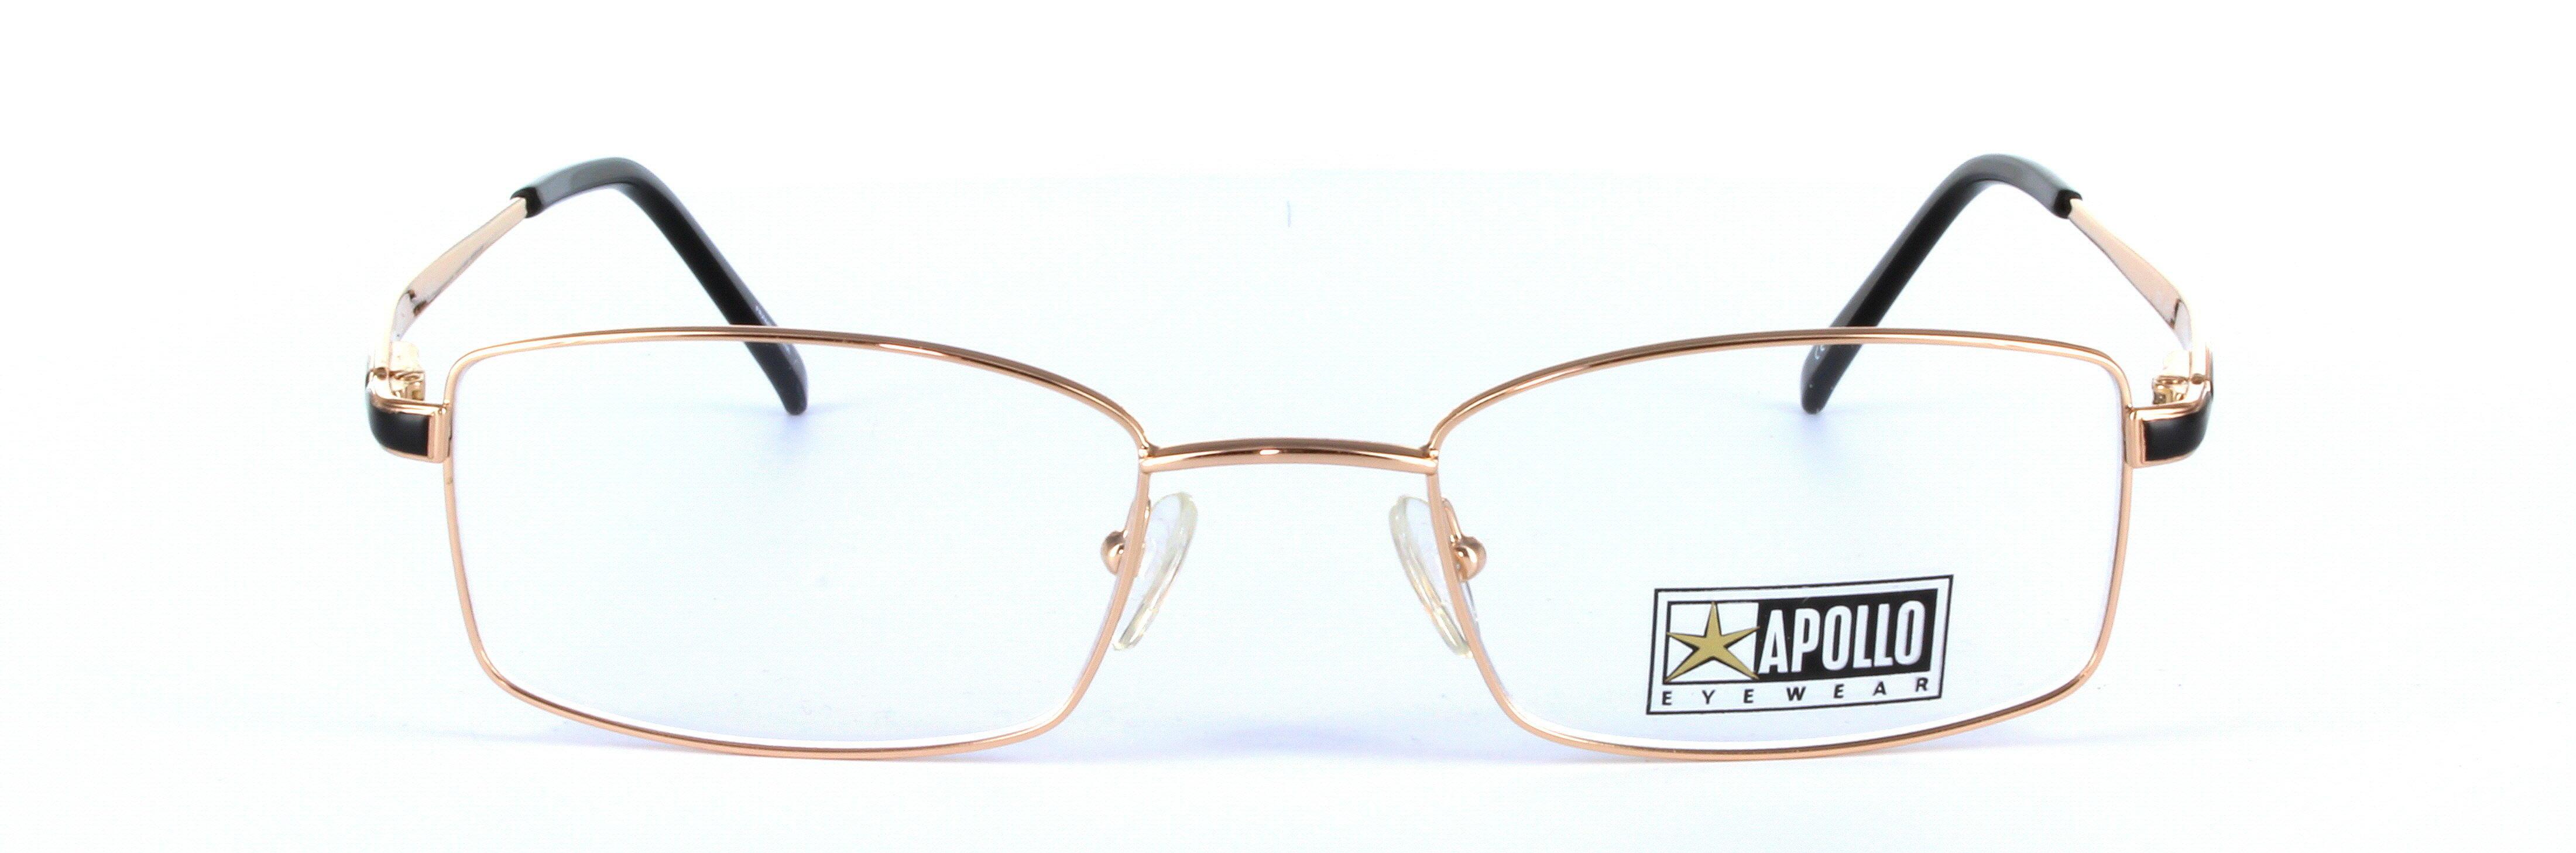 Chianti Gold Full Rim Rectangular Metal Glasses  - Image View 4